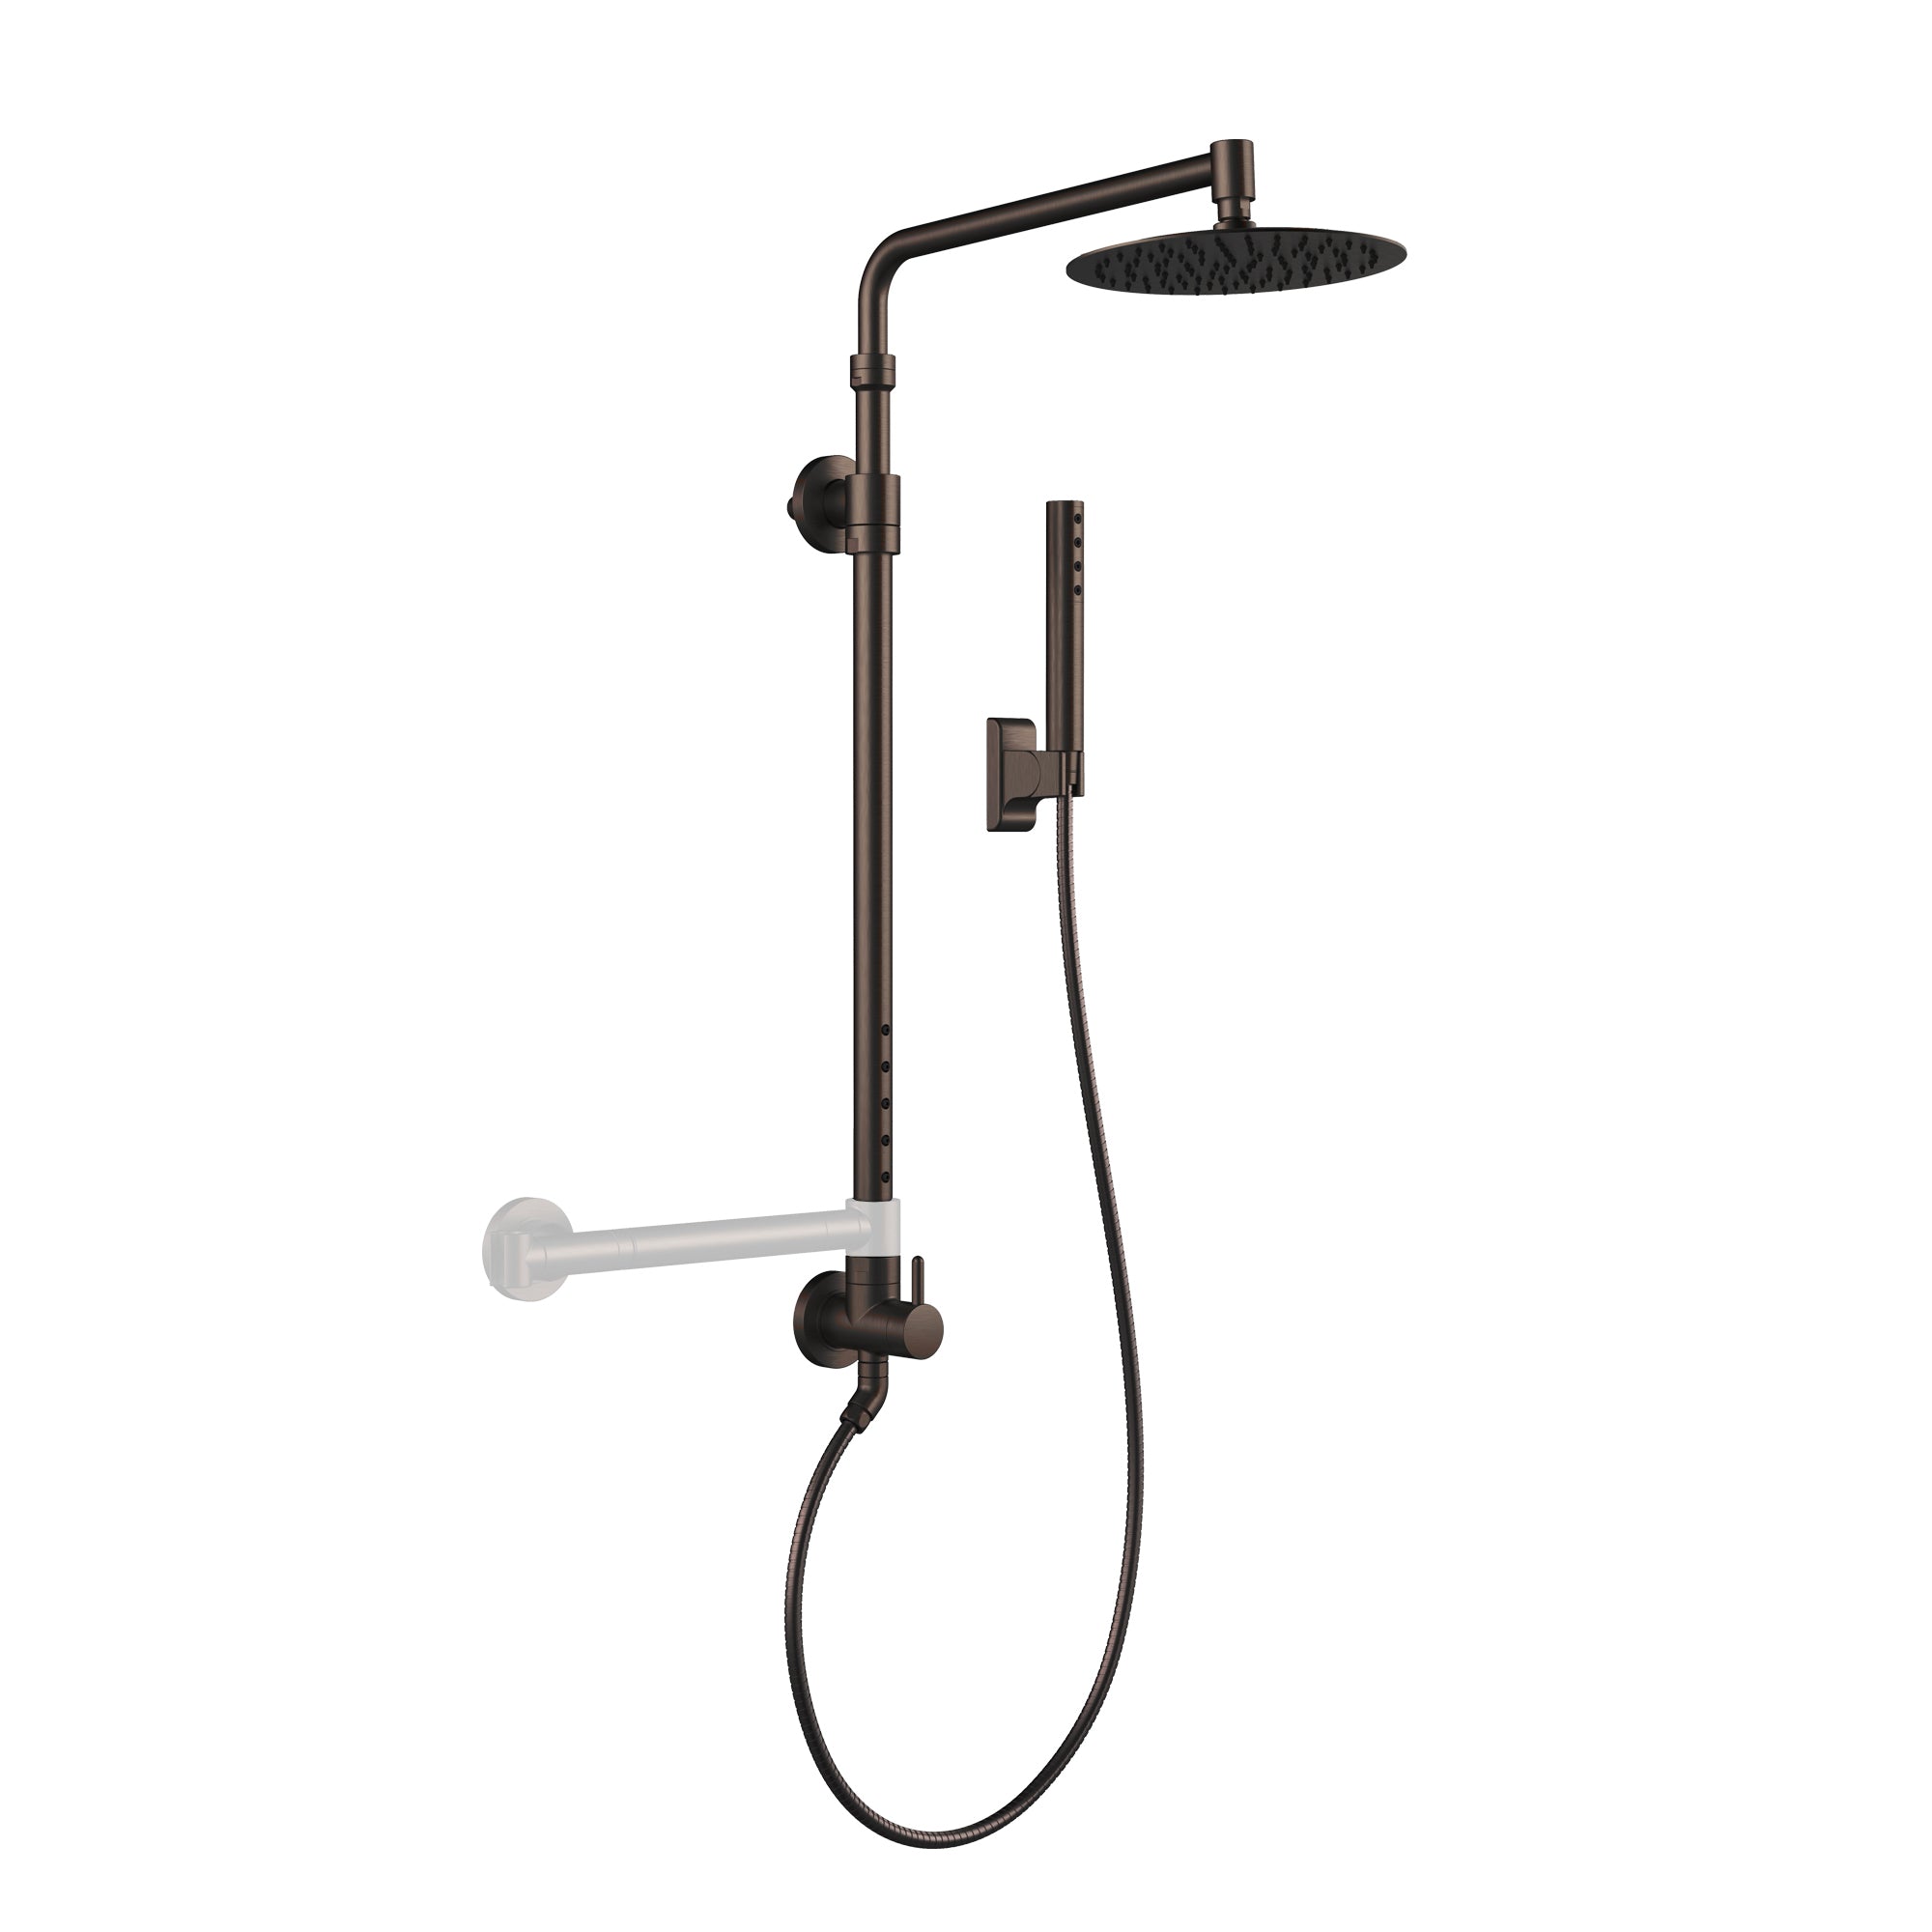 PULSE ShowerSpas Brushed Nickel Shower System - Atlantis Shower System